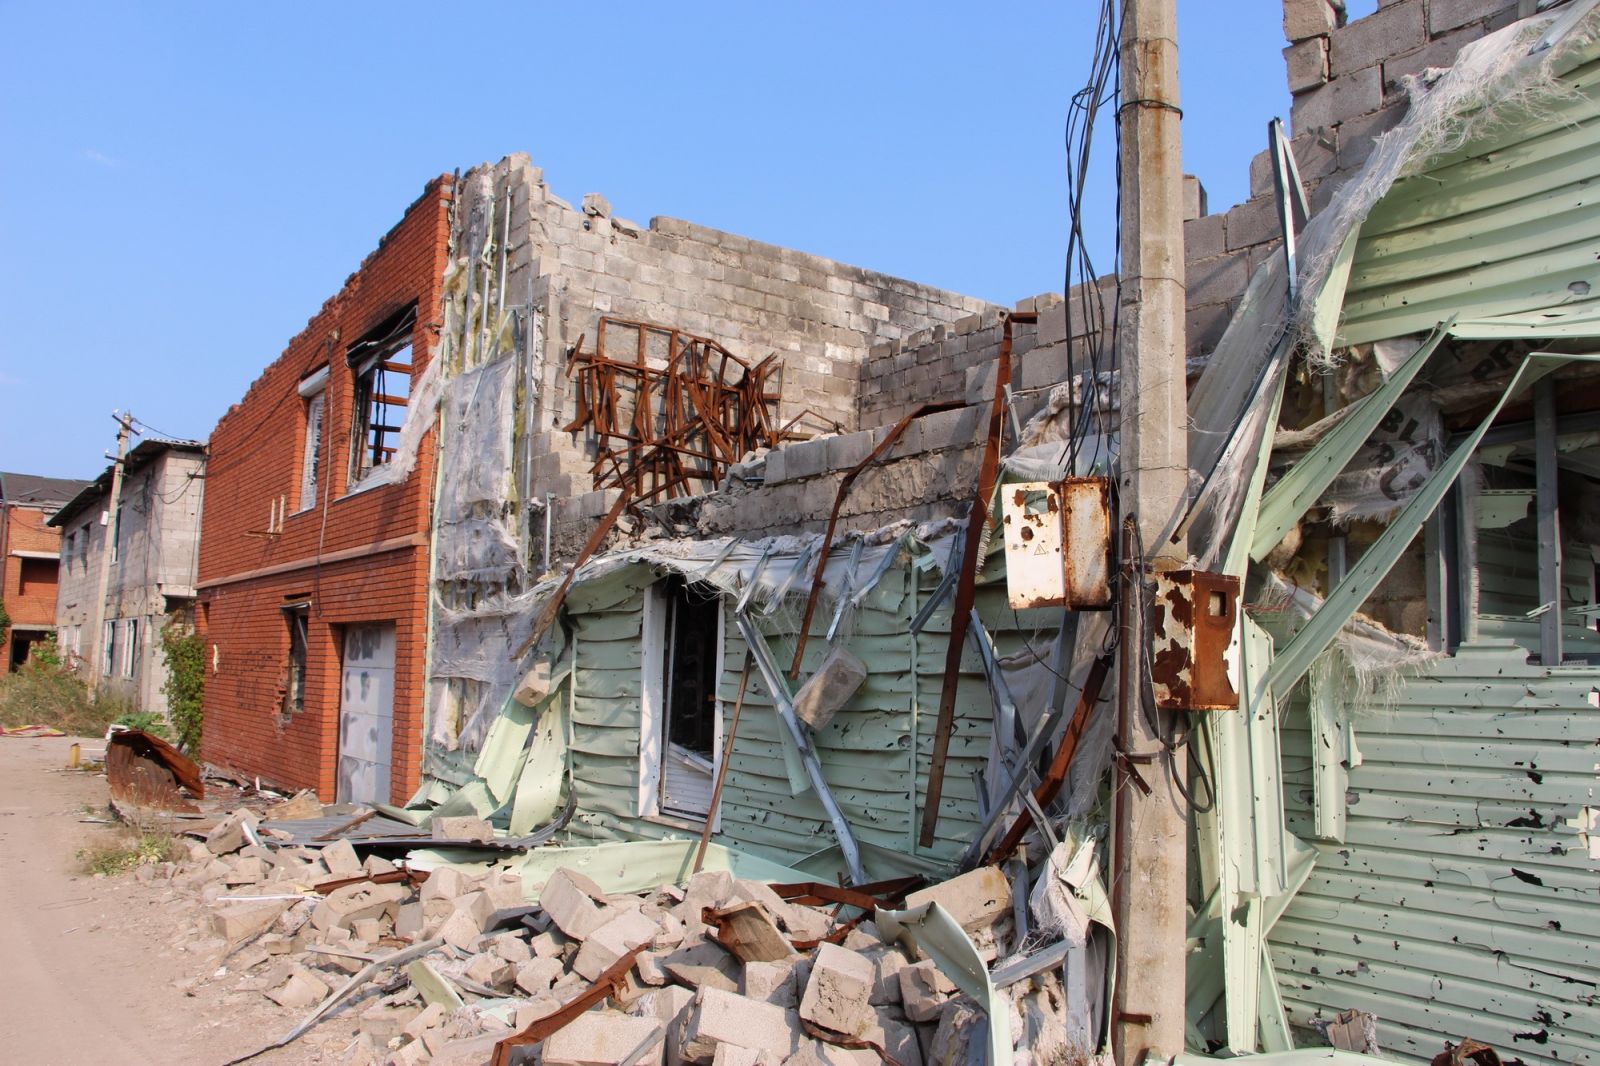 Курорт-призрак на Азове: опубликованы страшные фото разрушенного войной Широкино, фото — ООС